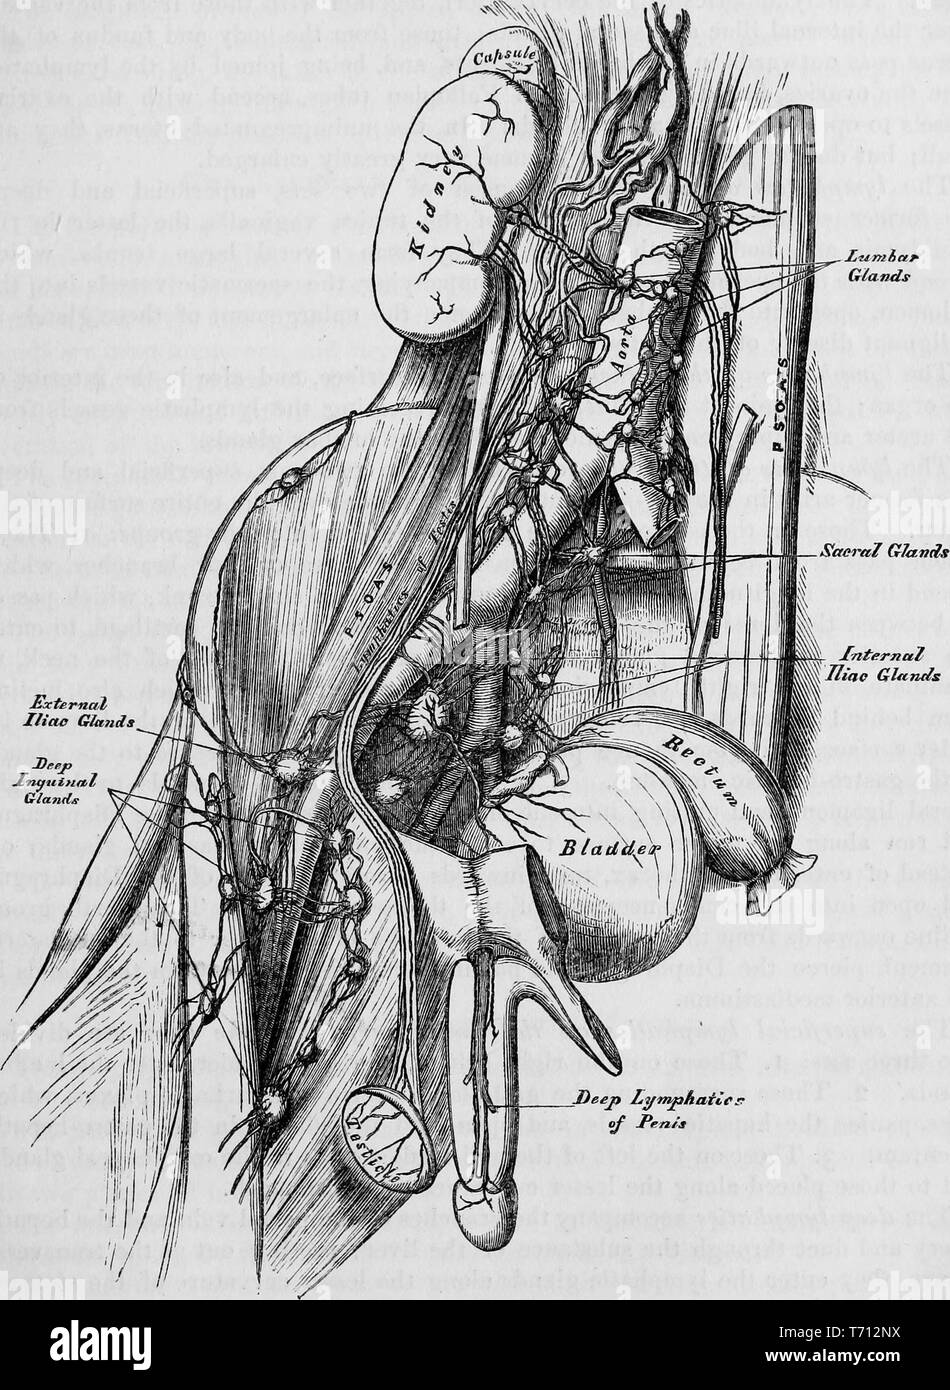 Photographie noir et blanc montrant une vue de profil de l'homme anatomie interne, y compris la vessie, rectum, les reins et la valve aortique, et en se concentrant sur le système lymphatique de la prostate, avec des étiquettes indiquant l'état extérieur et intérieur, les ganglions iliaques ganglions sacré, et les ganglions inguinaux, illustré par Henry Vandyke Carter, Henry et publié dans Grey's Anatomy, 'volume médicale et chirurgicale descriptif', 1860. Avec la permission de Internet Archive. () Banque D'Images